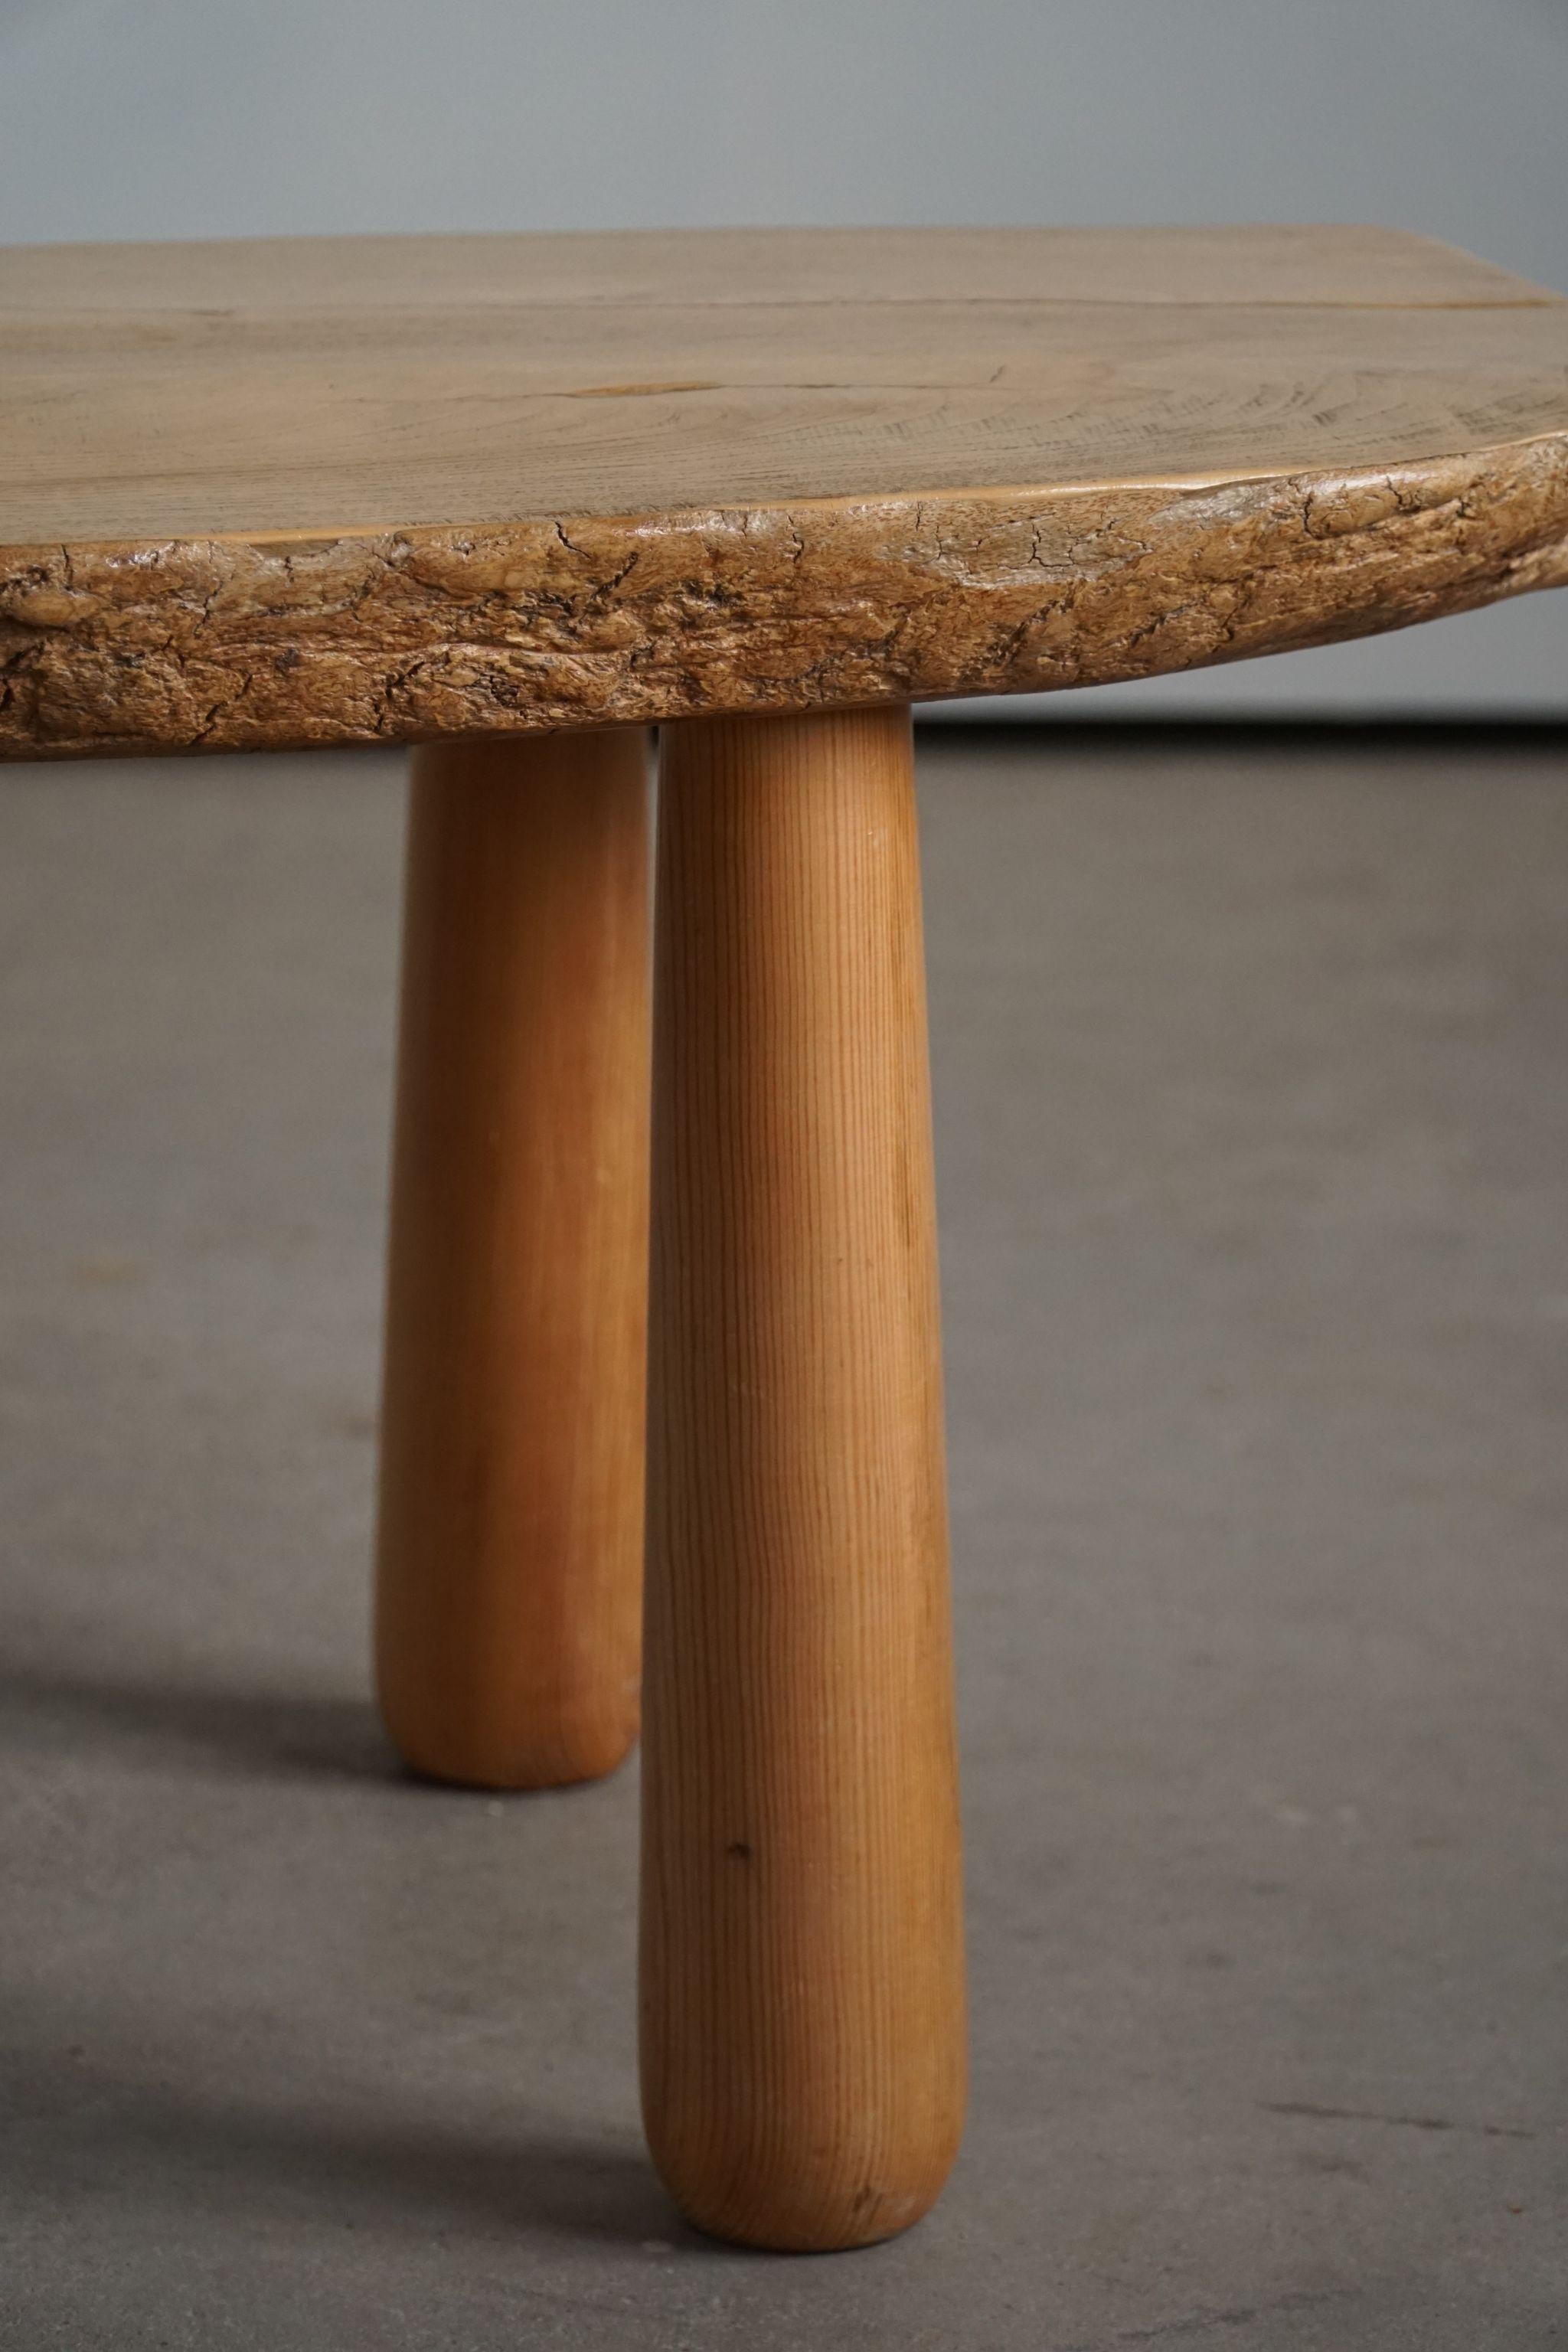 20th Century, Organic Table in Pine with Club Legs, Wabi Sabi, Swedish Modern 10